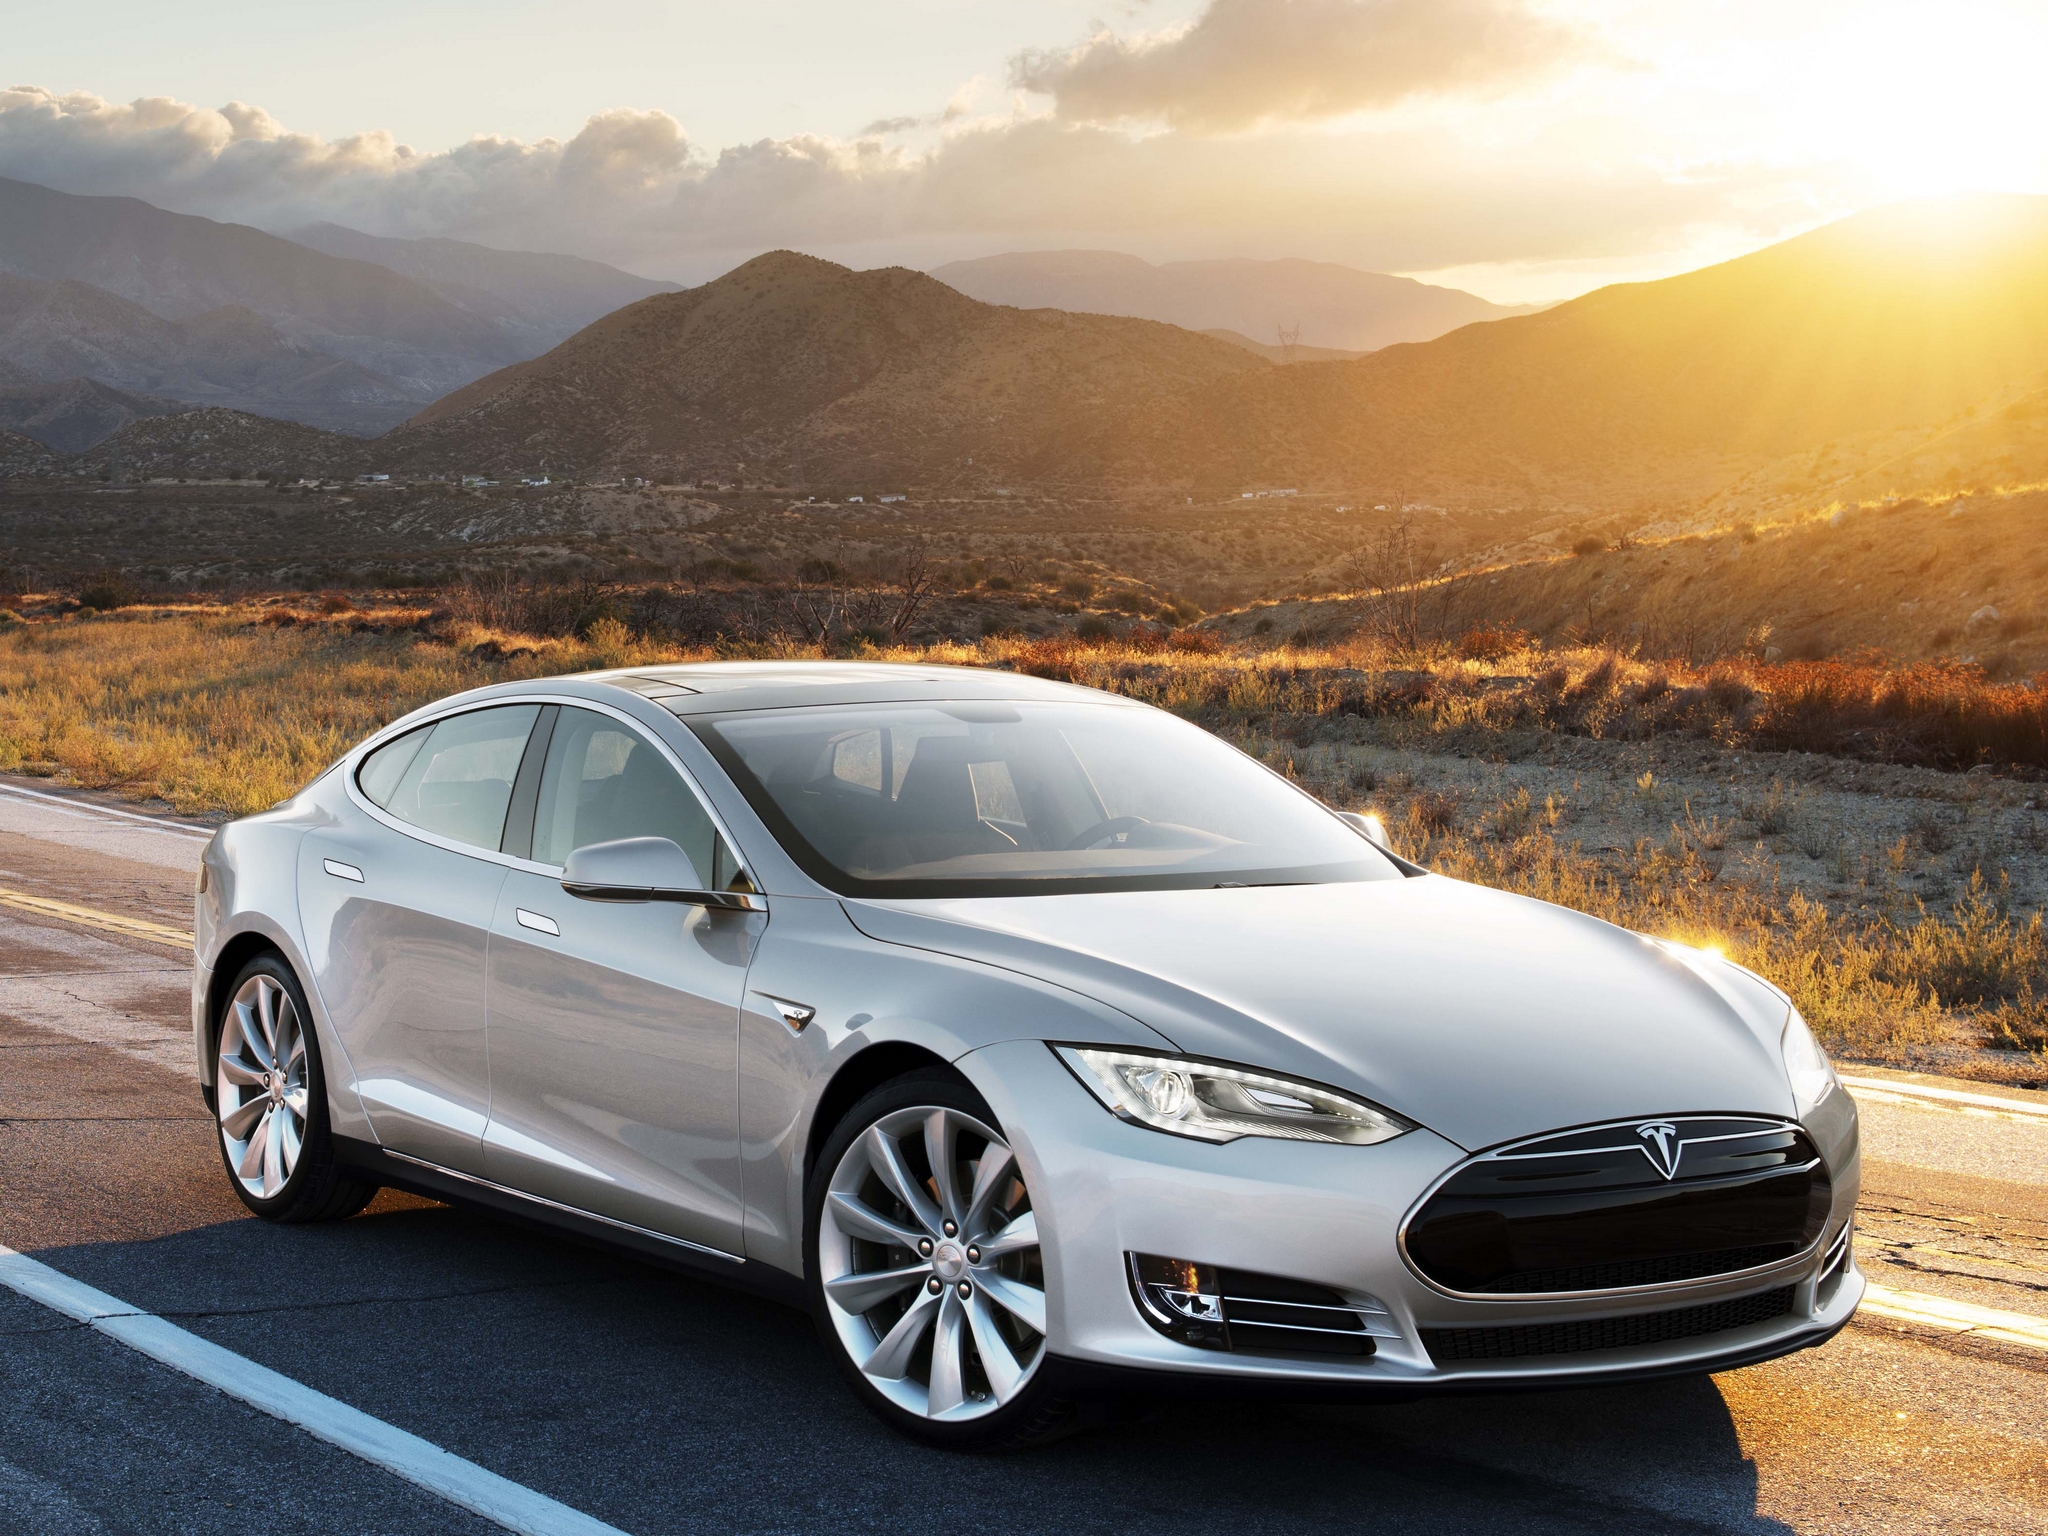 2012, Tesla, Model s, Supercar Wallpaper